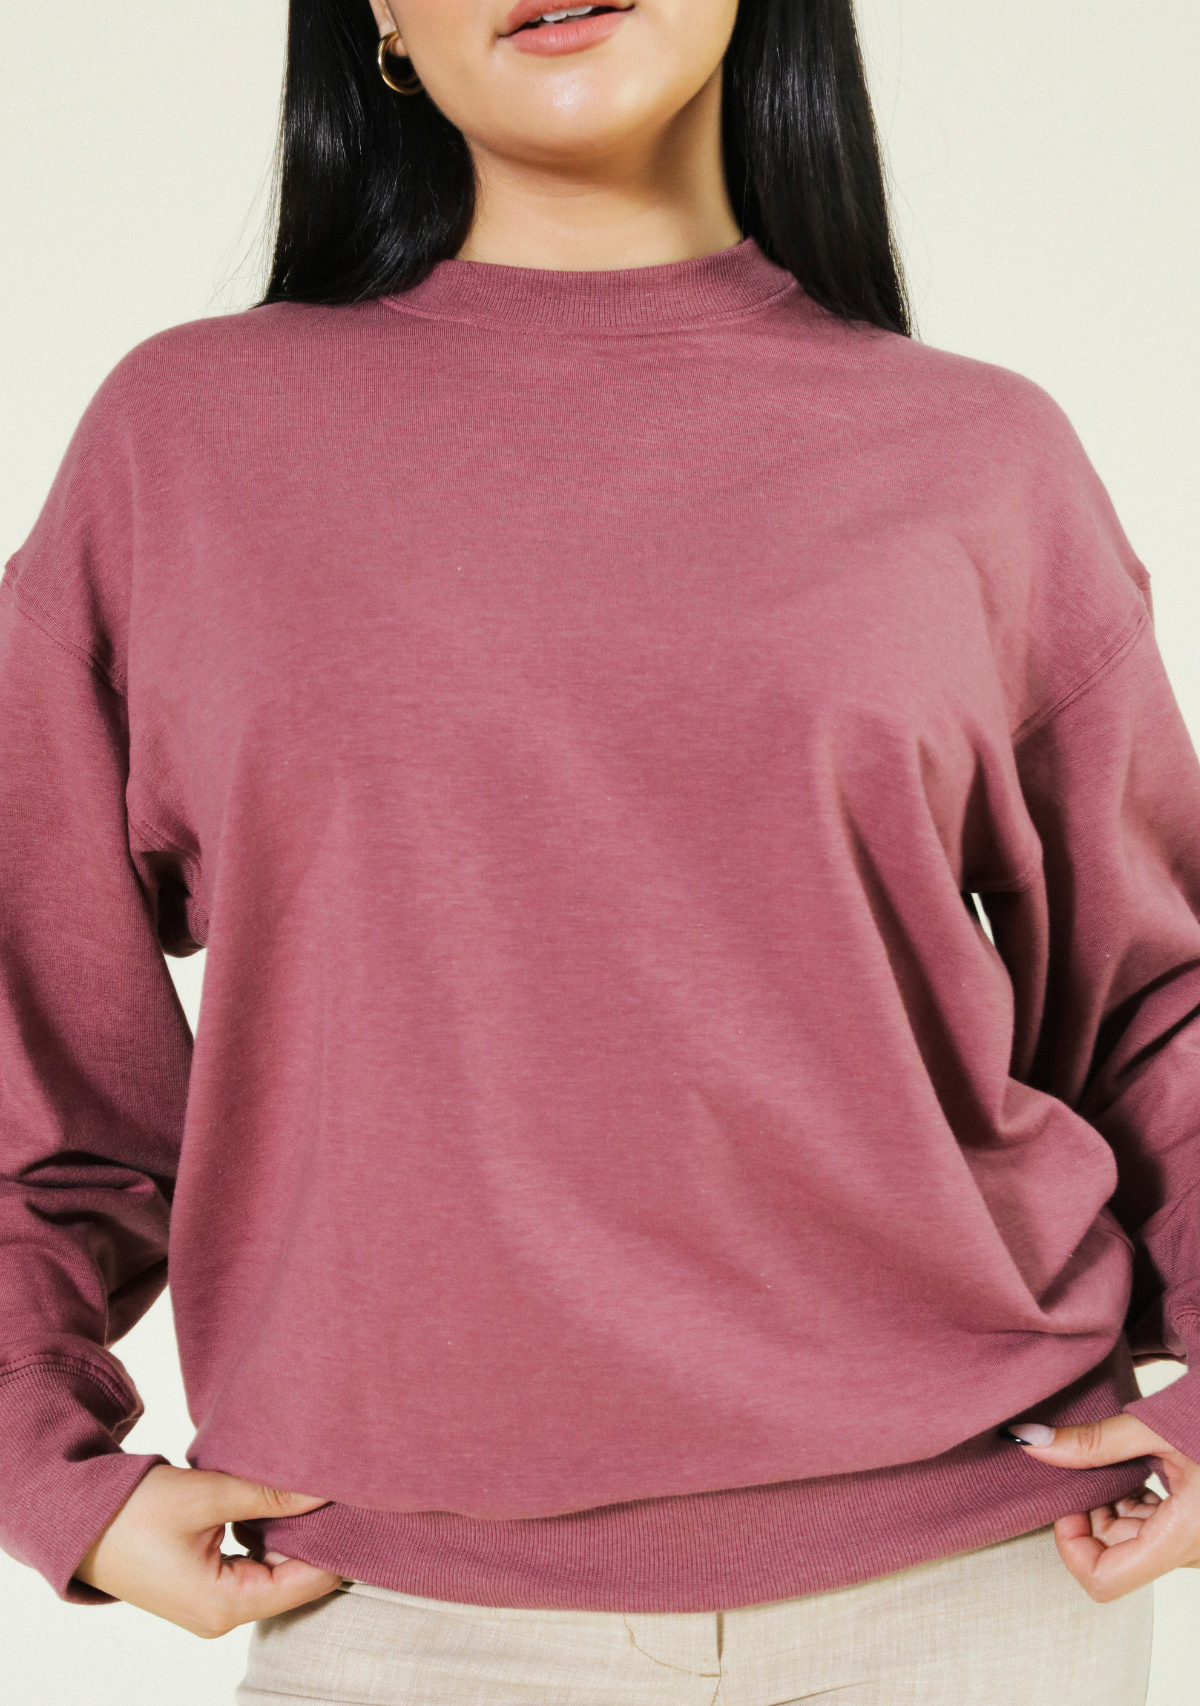 women's tencel fleece sustainable sweatshirt bundle sizes XS-3X Save $10